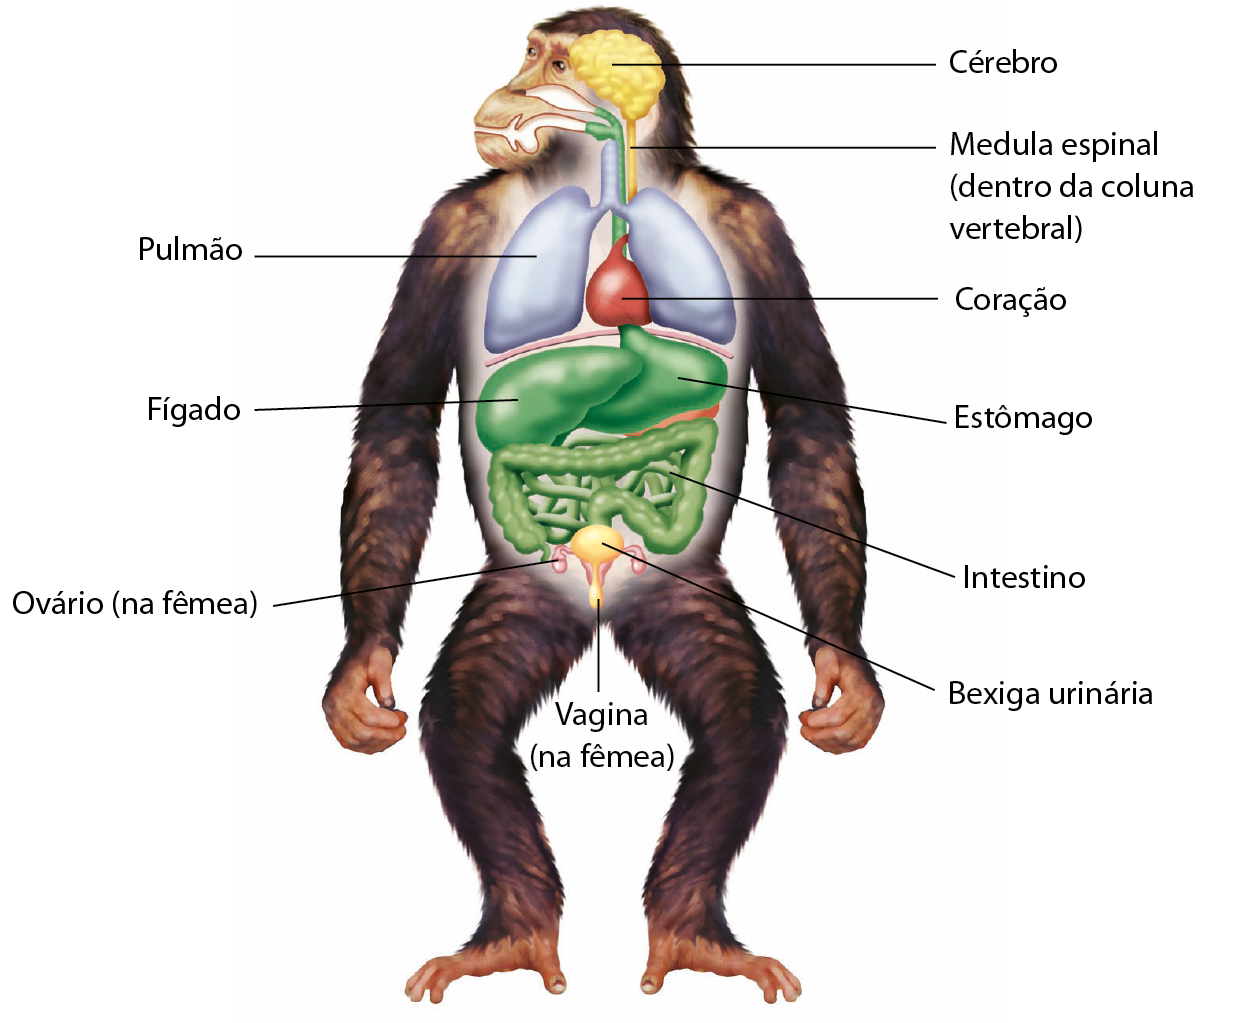 Esquema. Anatomia interna de um chimpanzé. Na parte anterior do corpo, cérebro, de onde sai um cordão que percorre toda a extensão do corpo, a medula espinal (dentro da coluna vertebral). Pulmão. Coração. Fígado, estômago, intestino, ovário (na fêmea), bexiga urinária e vagina (na fêmea).